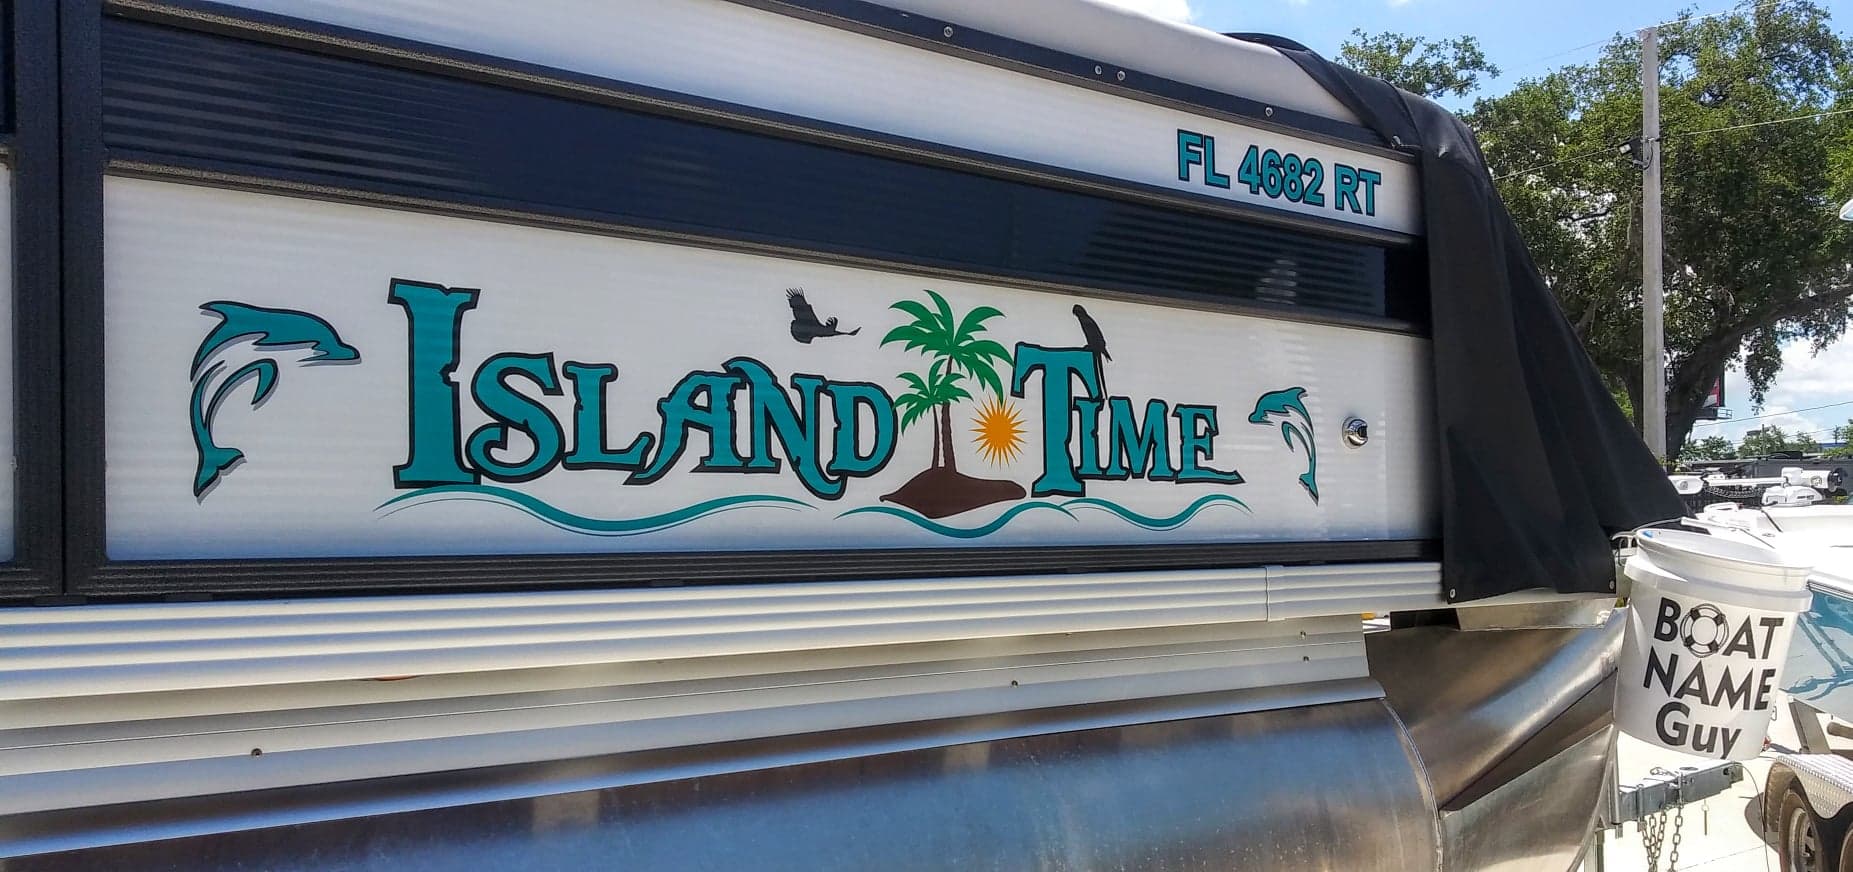 Island Time Boat Name